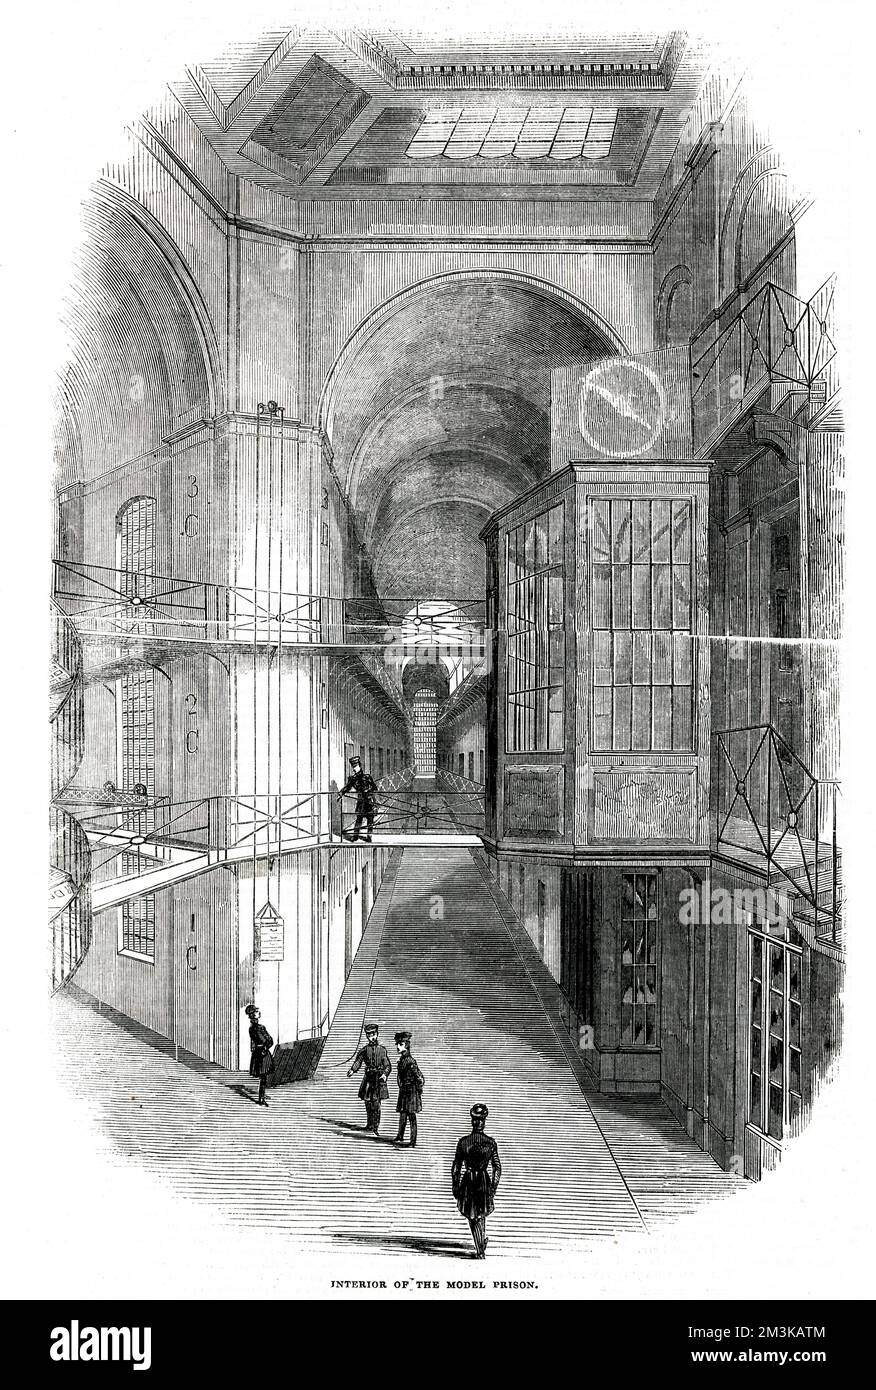 Innenansicht des neu erbauten Gefängnisses Pentonville im Norden Londons mit den Treppen und Galerien, die die Zentralhalle dieses festungsähnlichen Gebäudes durchqueren. Datum: 1843 Stockfoto